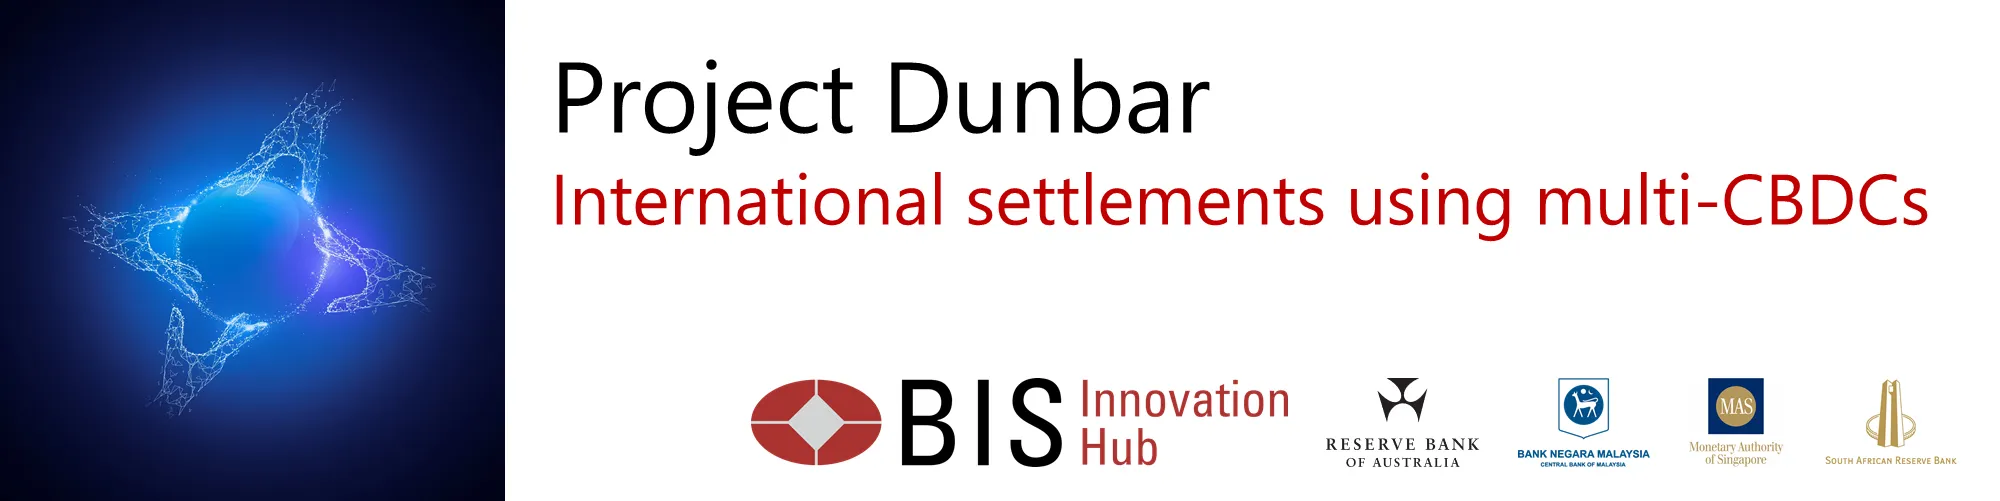 Proyecto Dunbar, una plataforma de moneda digital